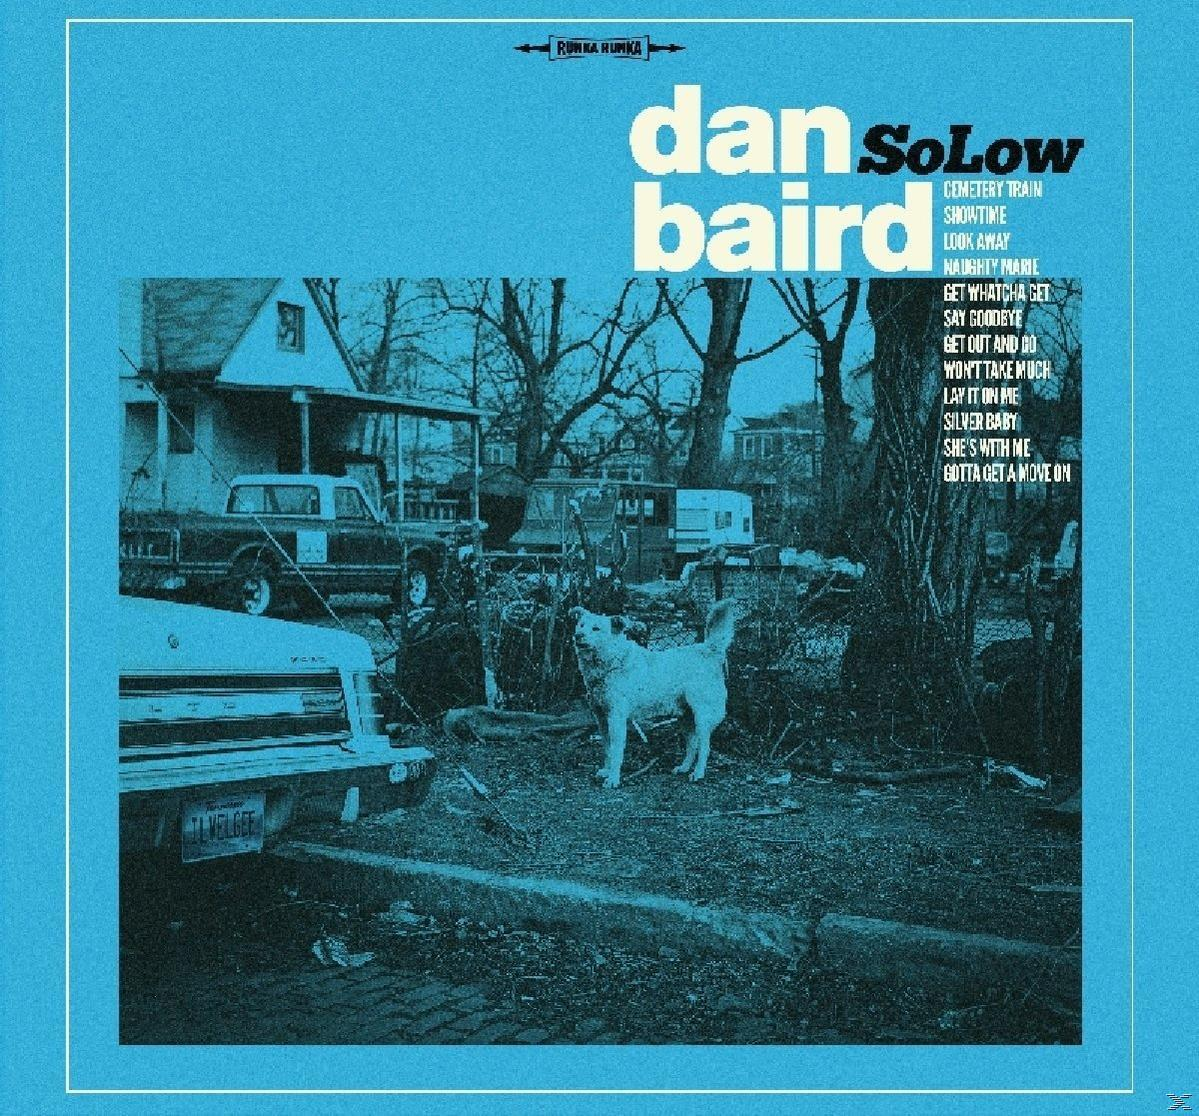 Baird (CD) - - Dan Solow